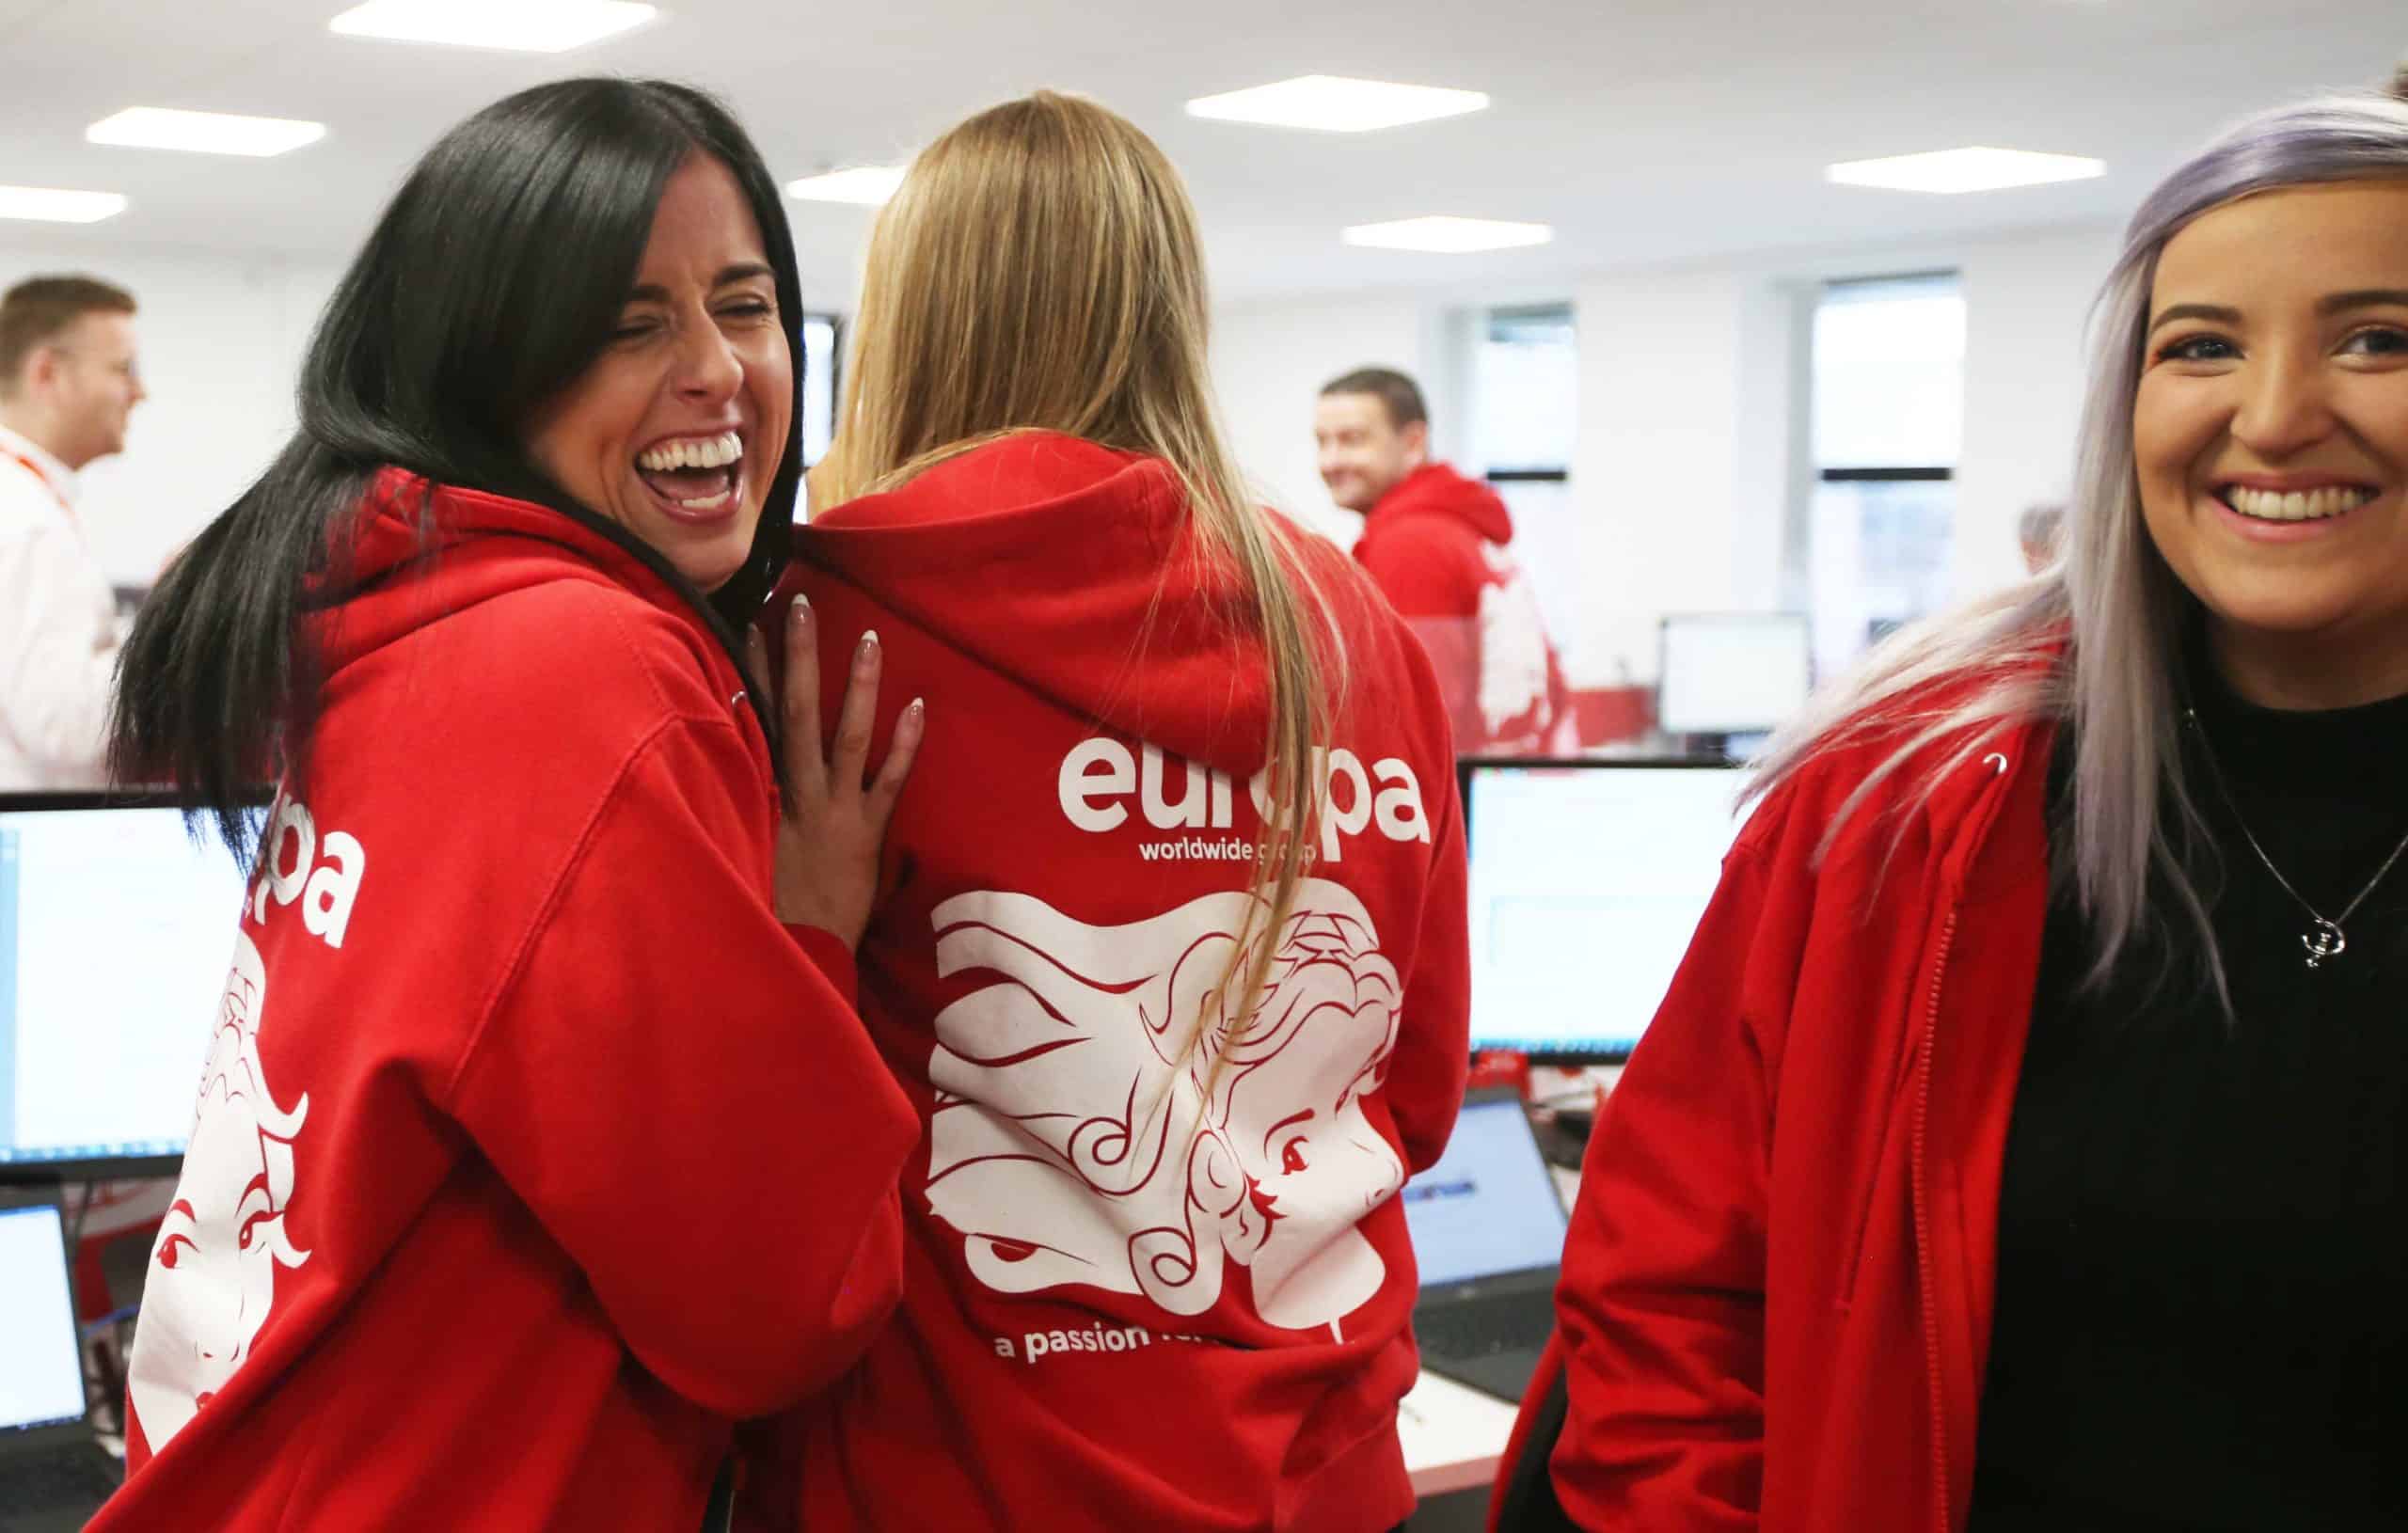 Europa Road Newcastle team member laughs in branded red, Europa hoodie